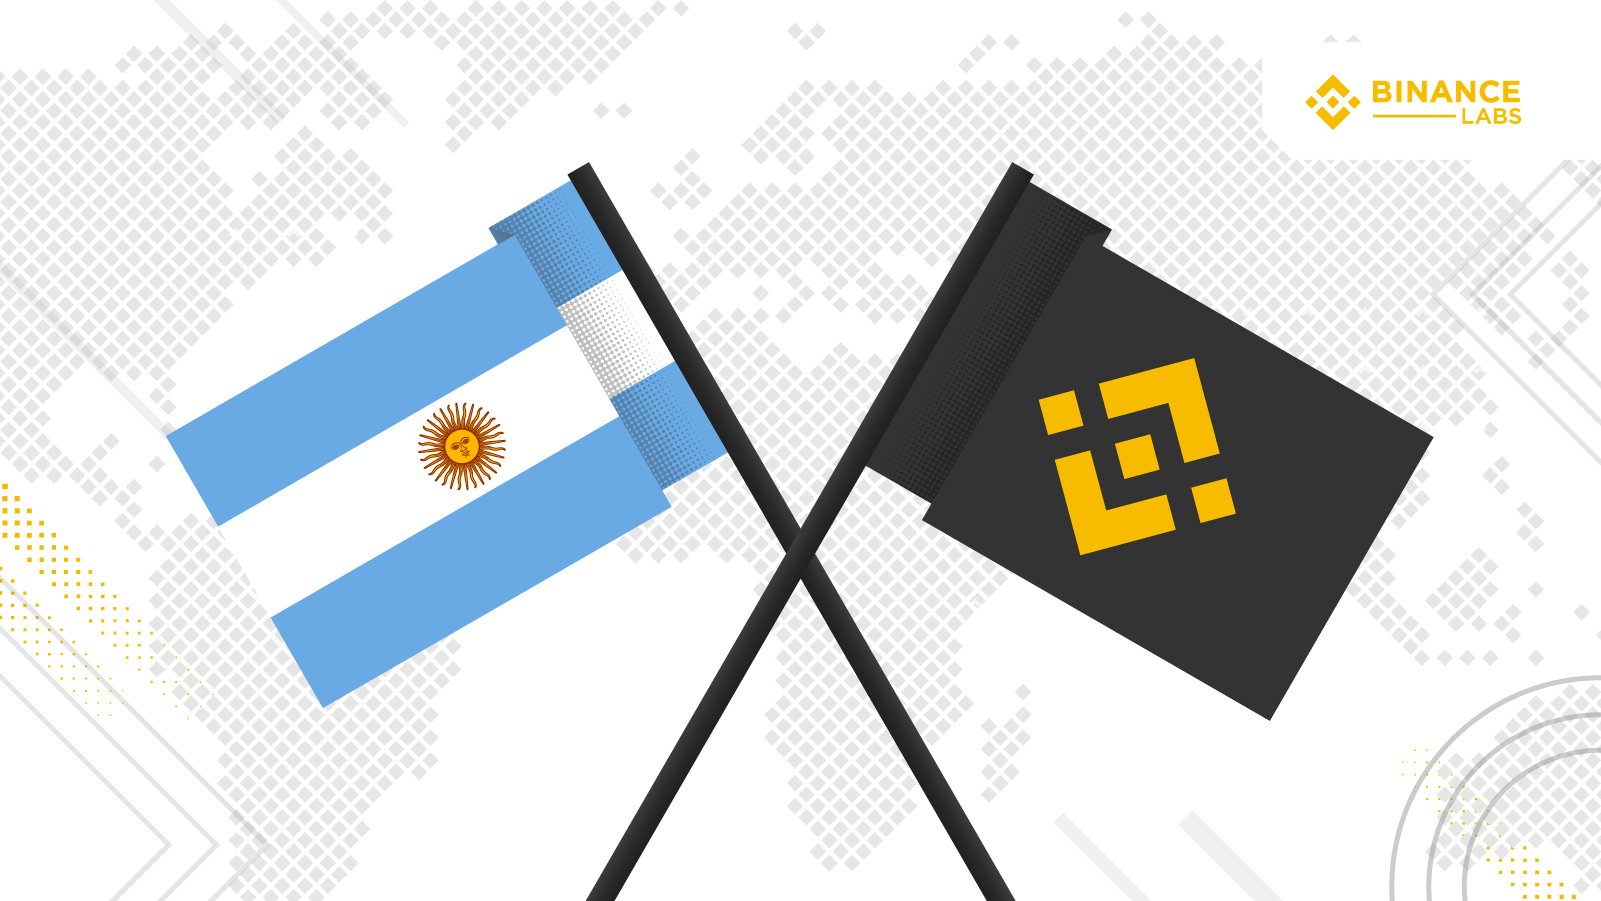 Binance sponsorizza la nazionale di calcio Argentina: criptovalute e sport sempre più vicini